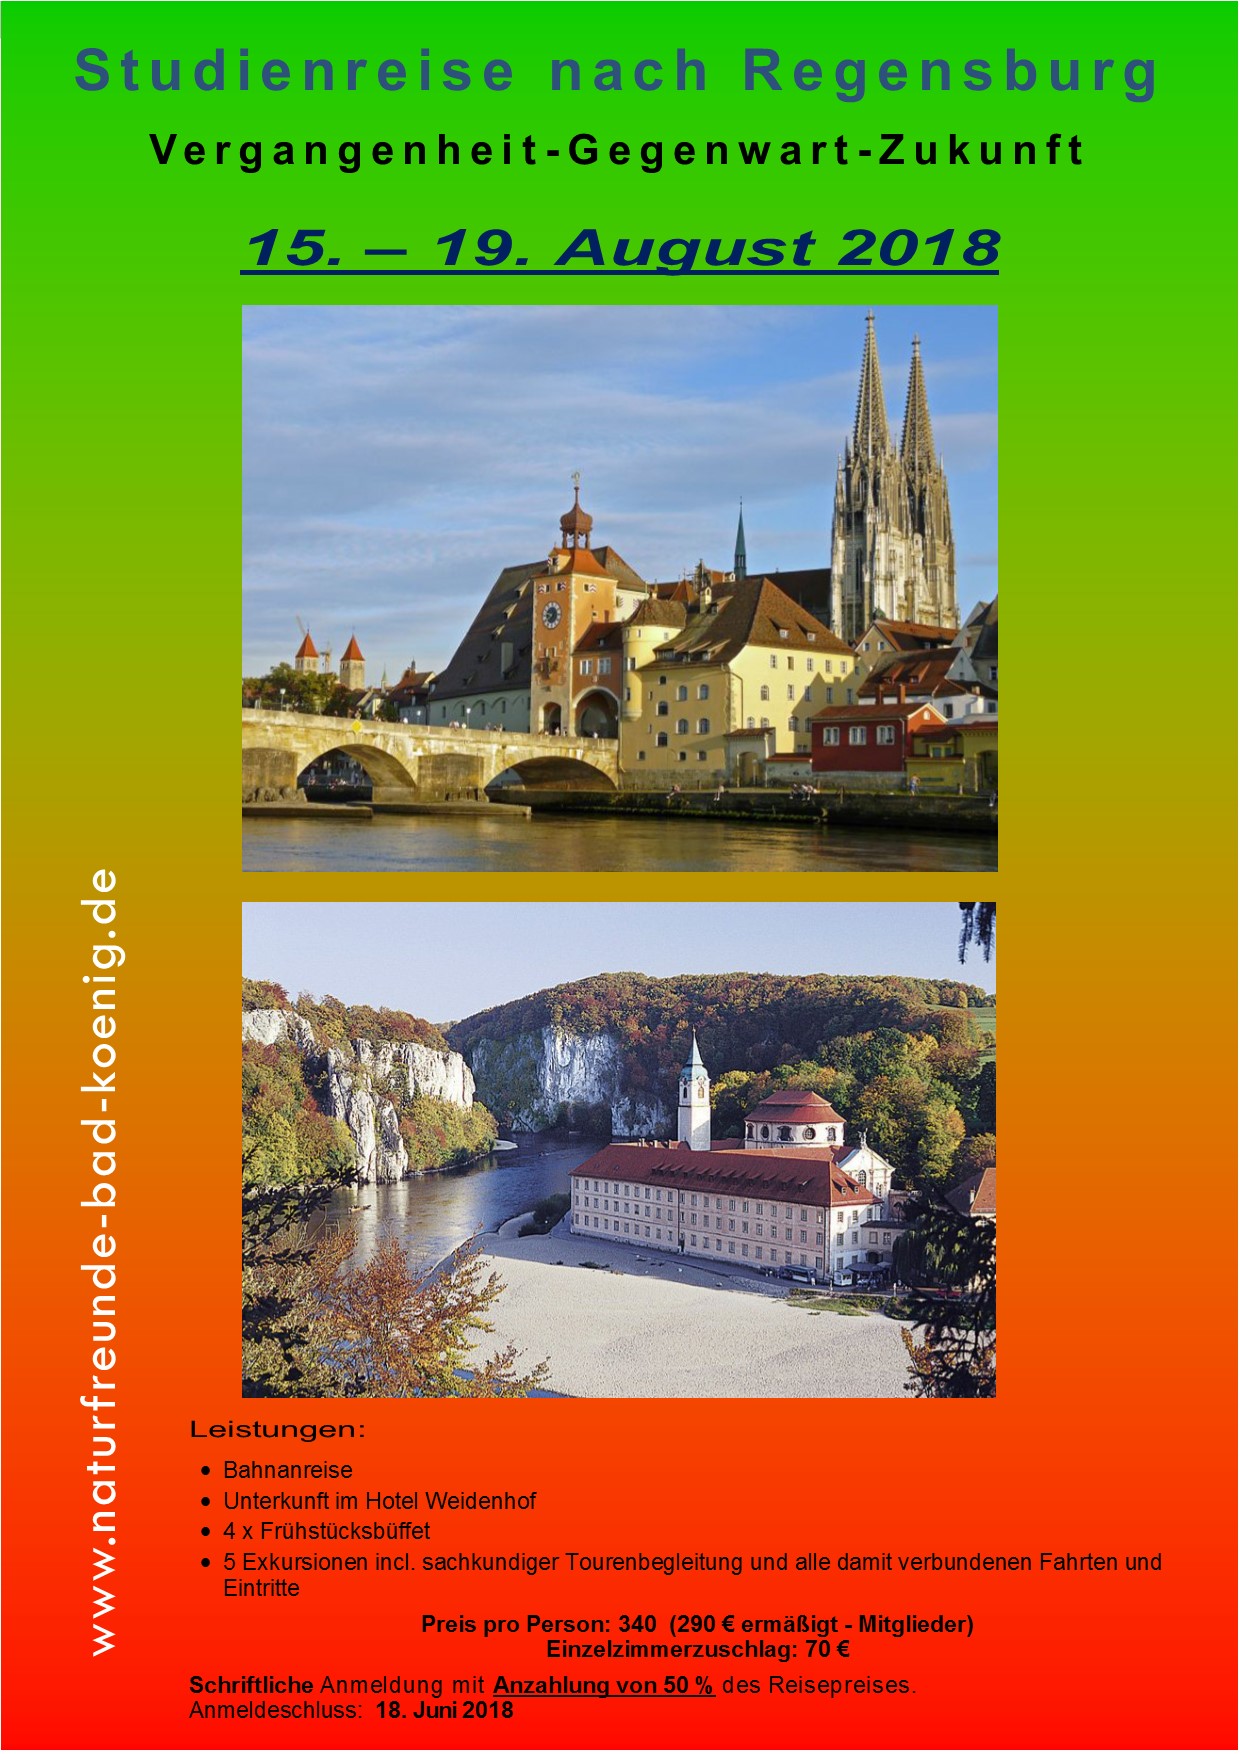 Studienreise nach Regensburg 15 - 19 August 2018jpg